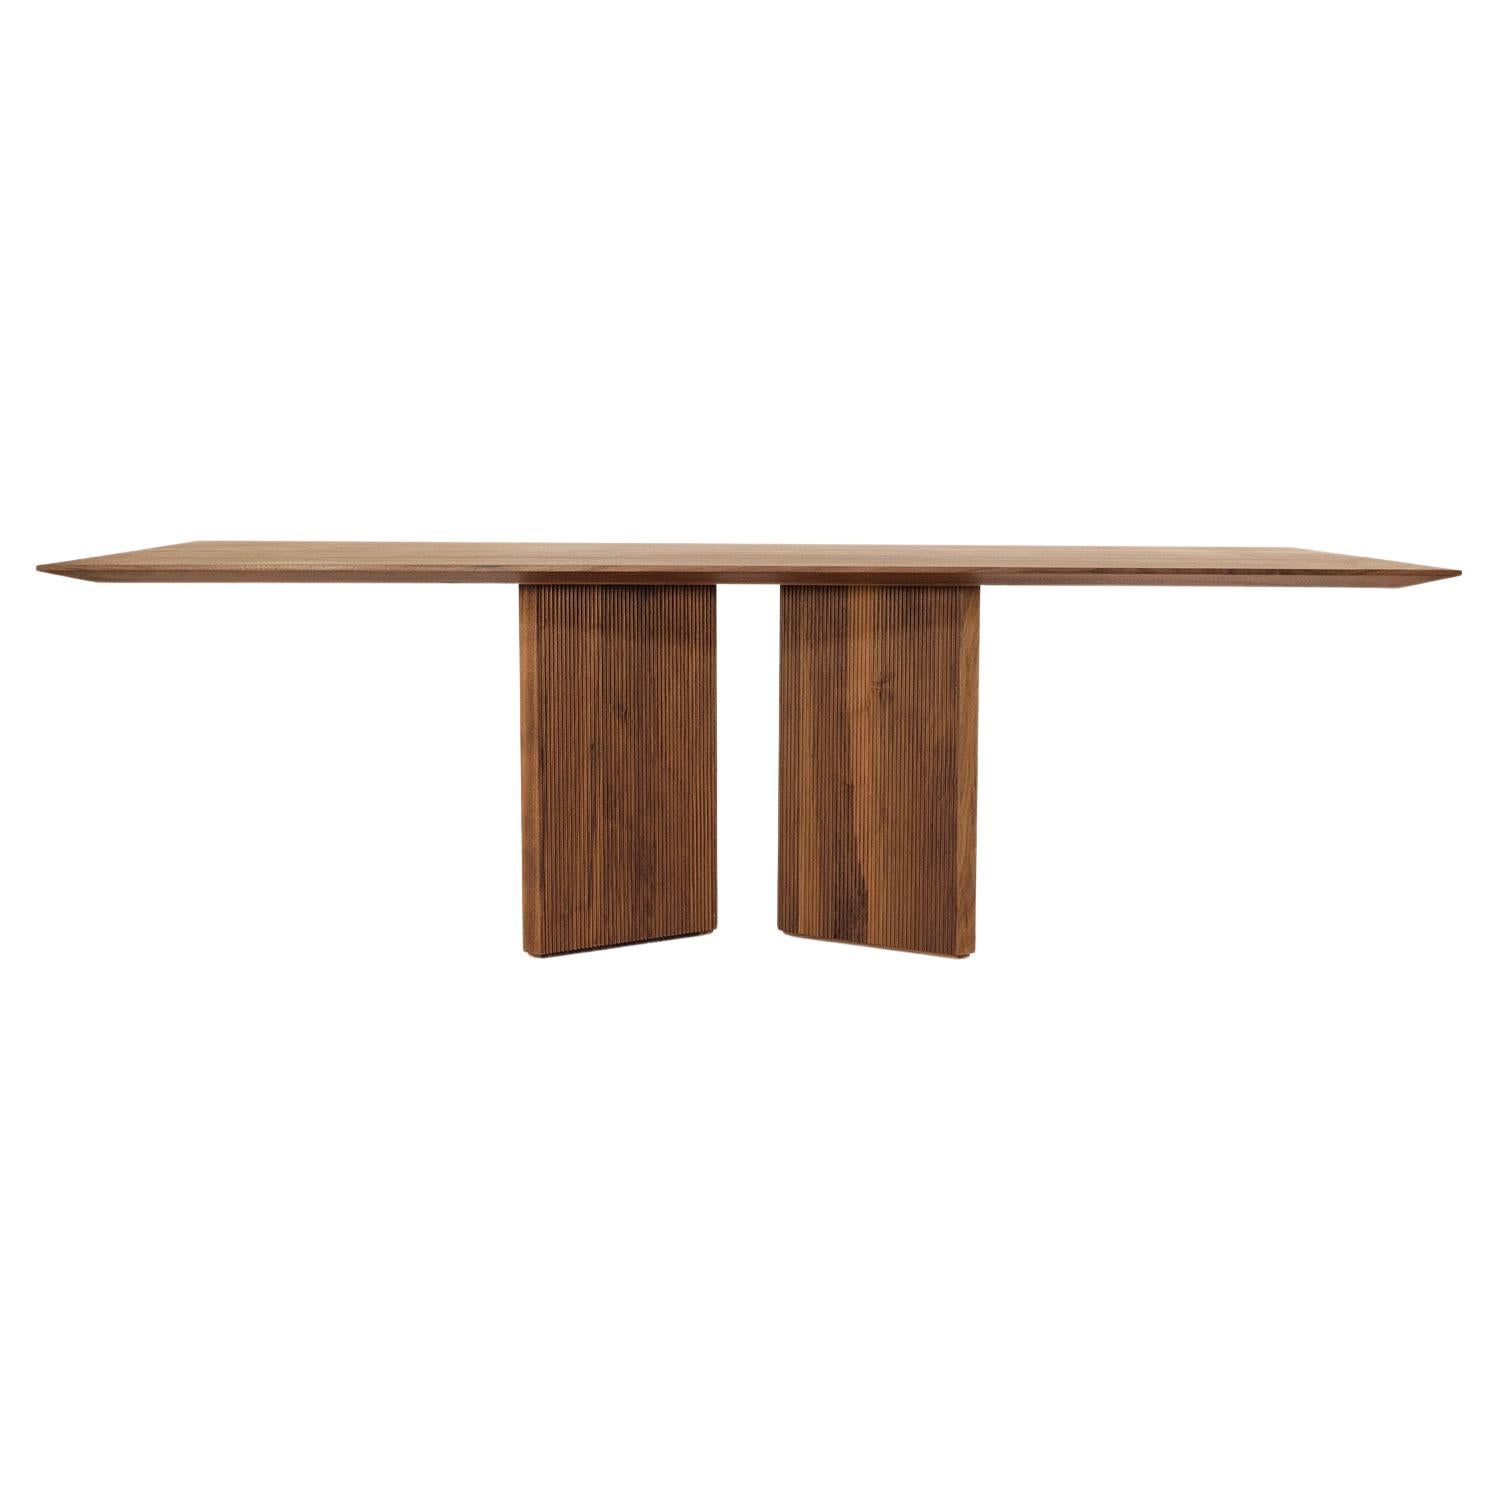 Table de salle à manger en bois Revo de Giuliano et Gabriele Cappelletti, fabriquée en Italie